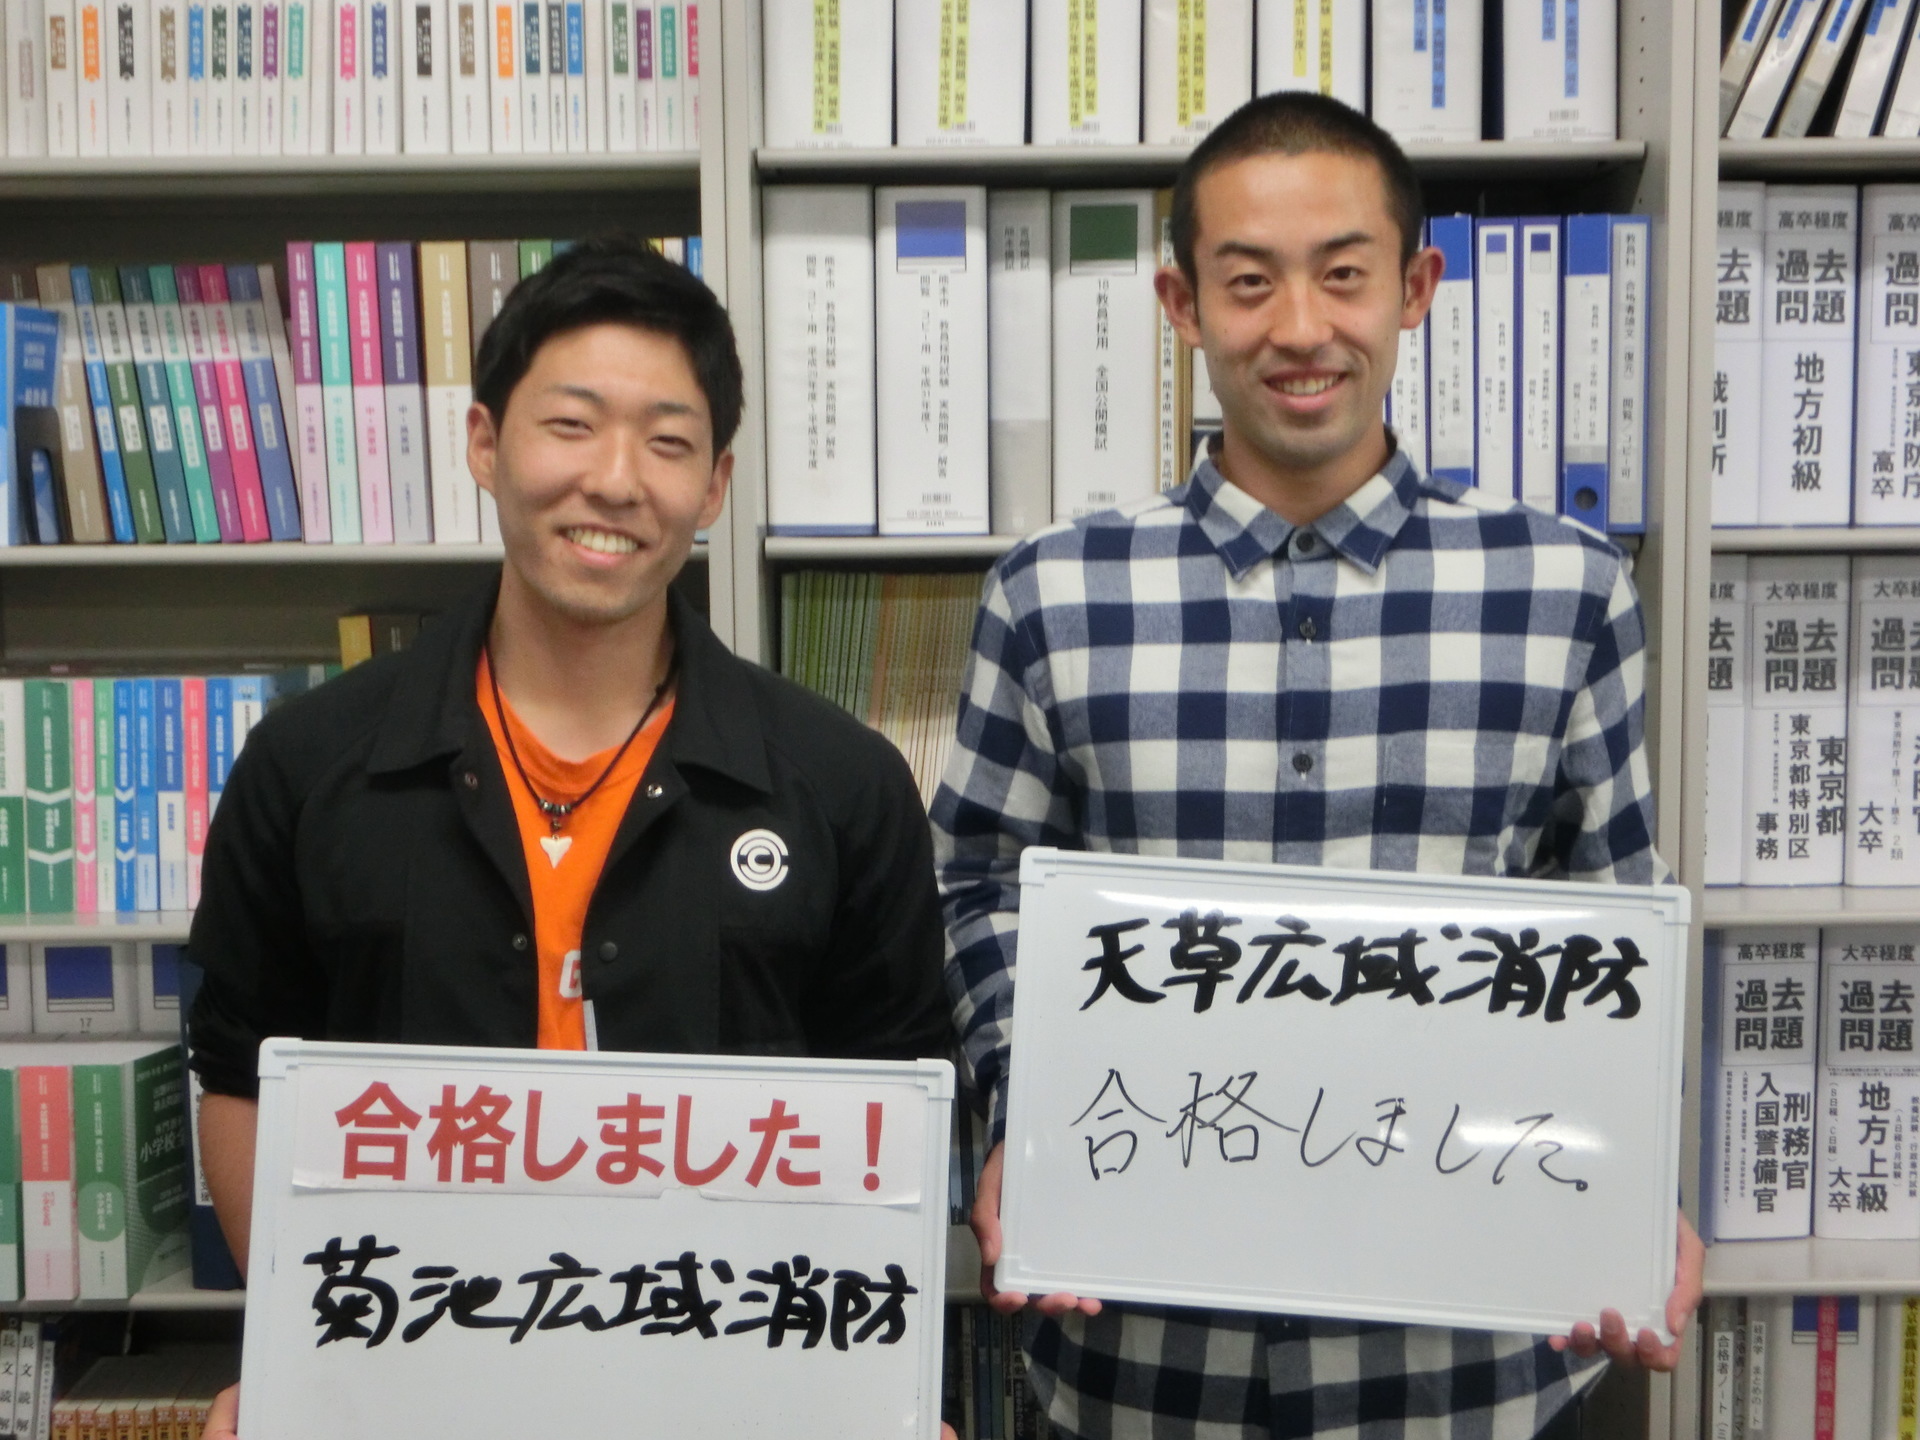 高卒程度公務員試験対策 最終合格が続々発表が出てきています 東京アカデミー熊本校 教員採用試験 看護師国家試験 公務員試験 のブログ